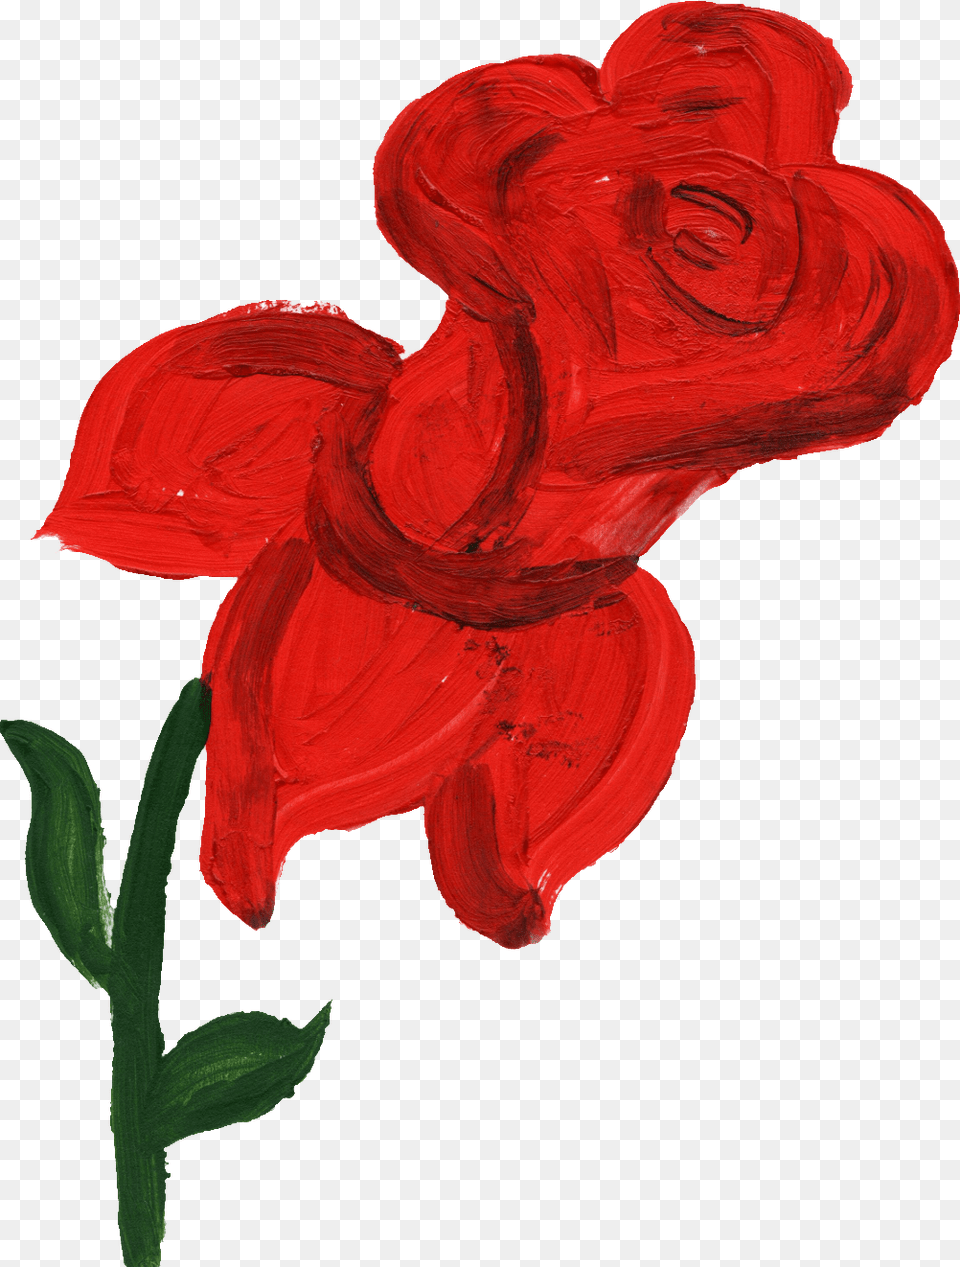 Rose Paint, Flower, Plant, Petal, Adult Png Image